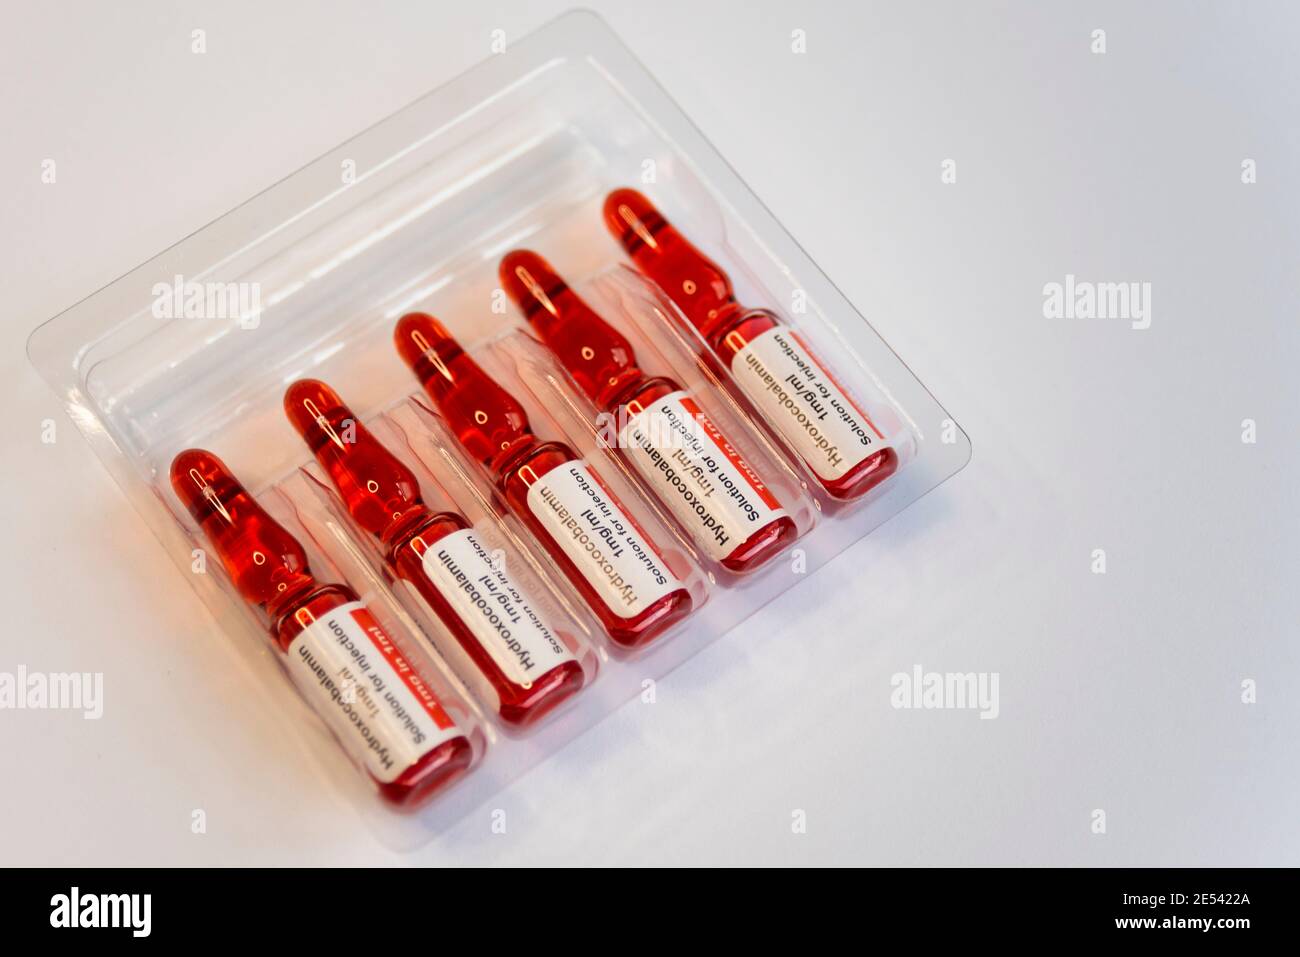 Hydroxocobalaminacetat-Ampullen, Vitamin B12A. Rot gefärbte  Injektionslösung in der Behandlung von Vitamin B12 Mangel. Accord  Healthcare Stockfotografie - Alamy